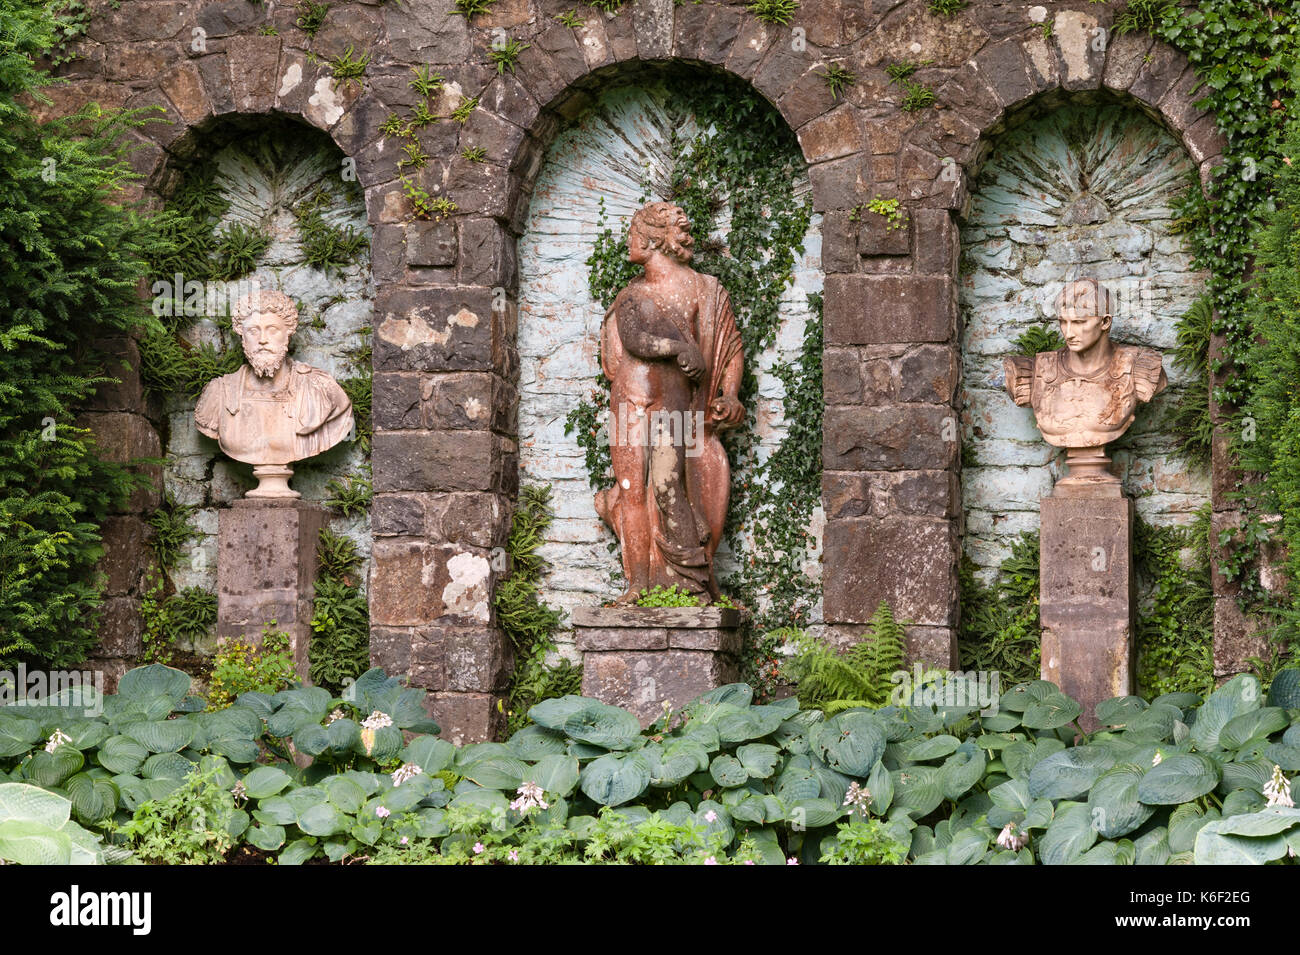 Plas Brondanw, Pays de Galles, Royaume-Uni. Statues et bustes classiques dans les jardins à la maison de Clough Williams-Ellis, architecte de Portmeirion à proximité. Banque D'Images